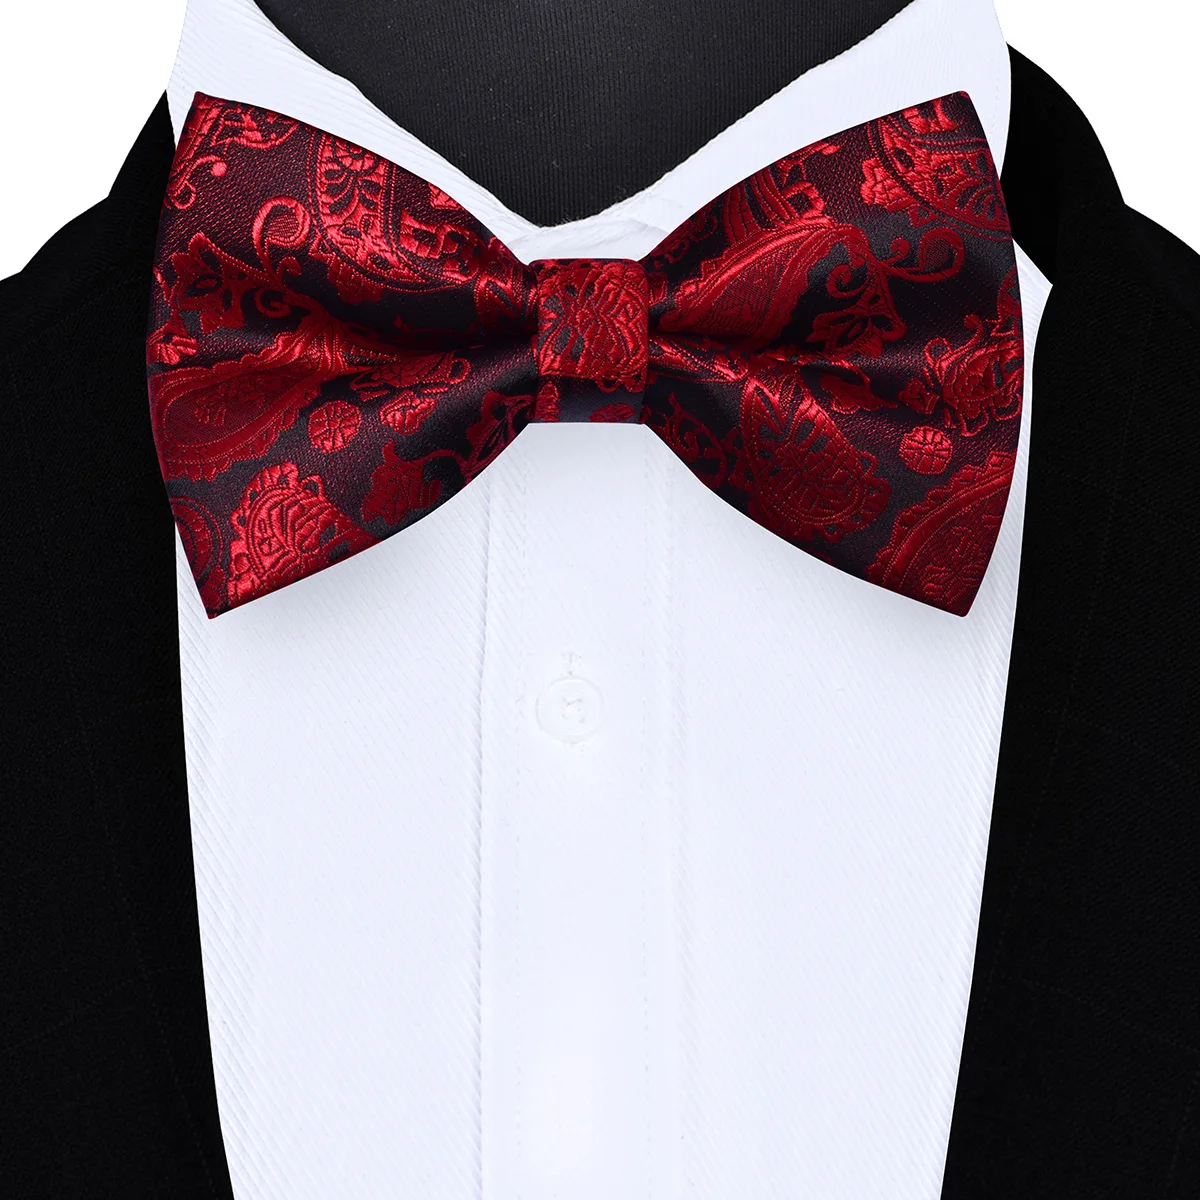 Ricnais Новая мода 12 см * 7 см белый черный фон пейсли галстук-бабочка для мужчин бизнес свадебные галстуки для вечеринок gigt аксессуары бант